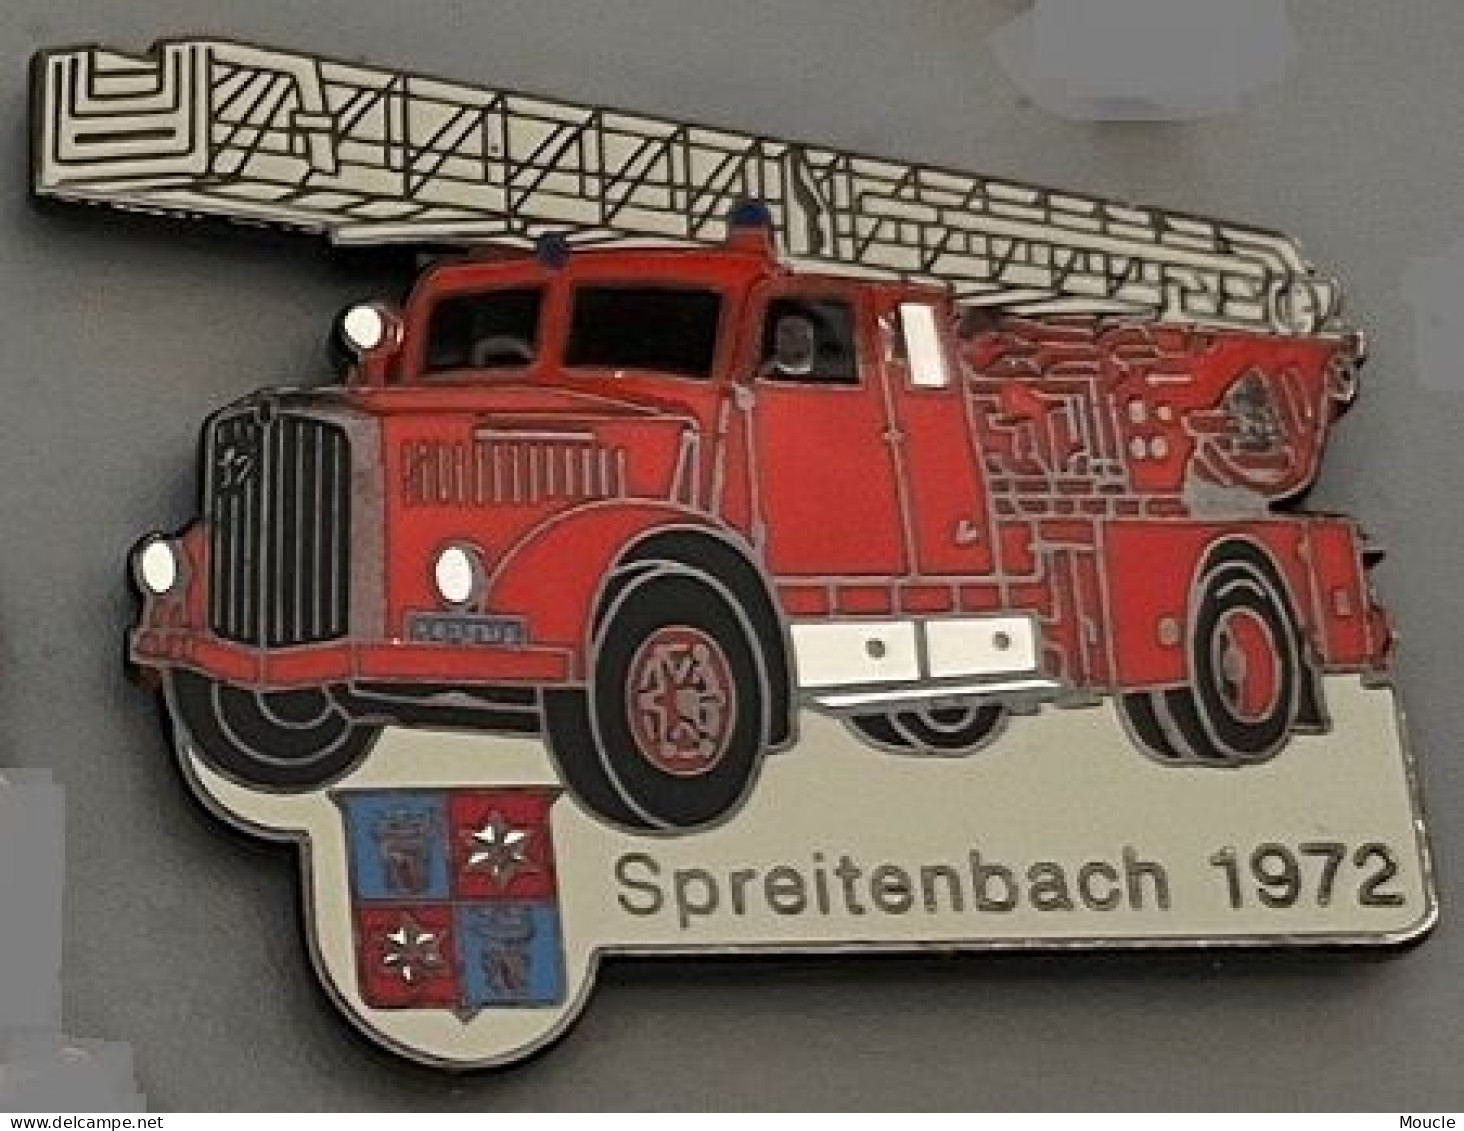 CAMION SAPEURS POMPIERS - SPREITENBACH 1972 - SUISSE - SCHWEIZ - TRUCK - FEUERWEHRMANN - FIREFIGHTER - EGF - N°372 -(32) - Feuerwehr